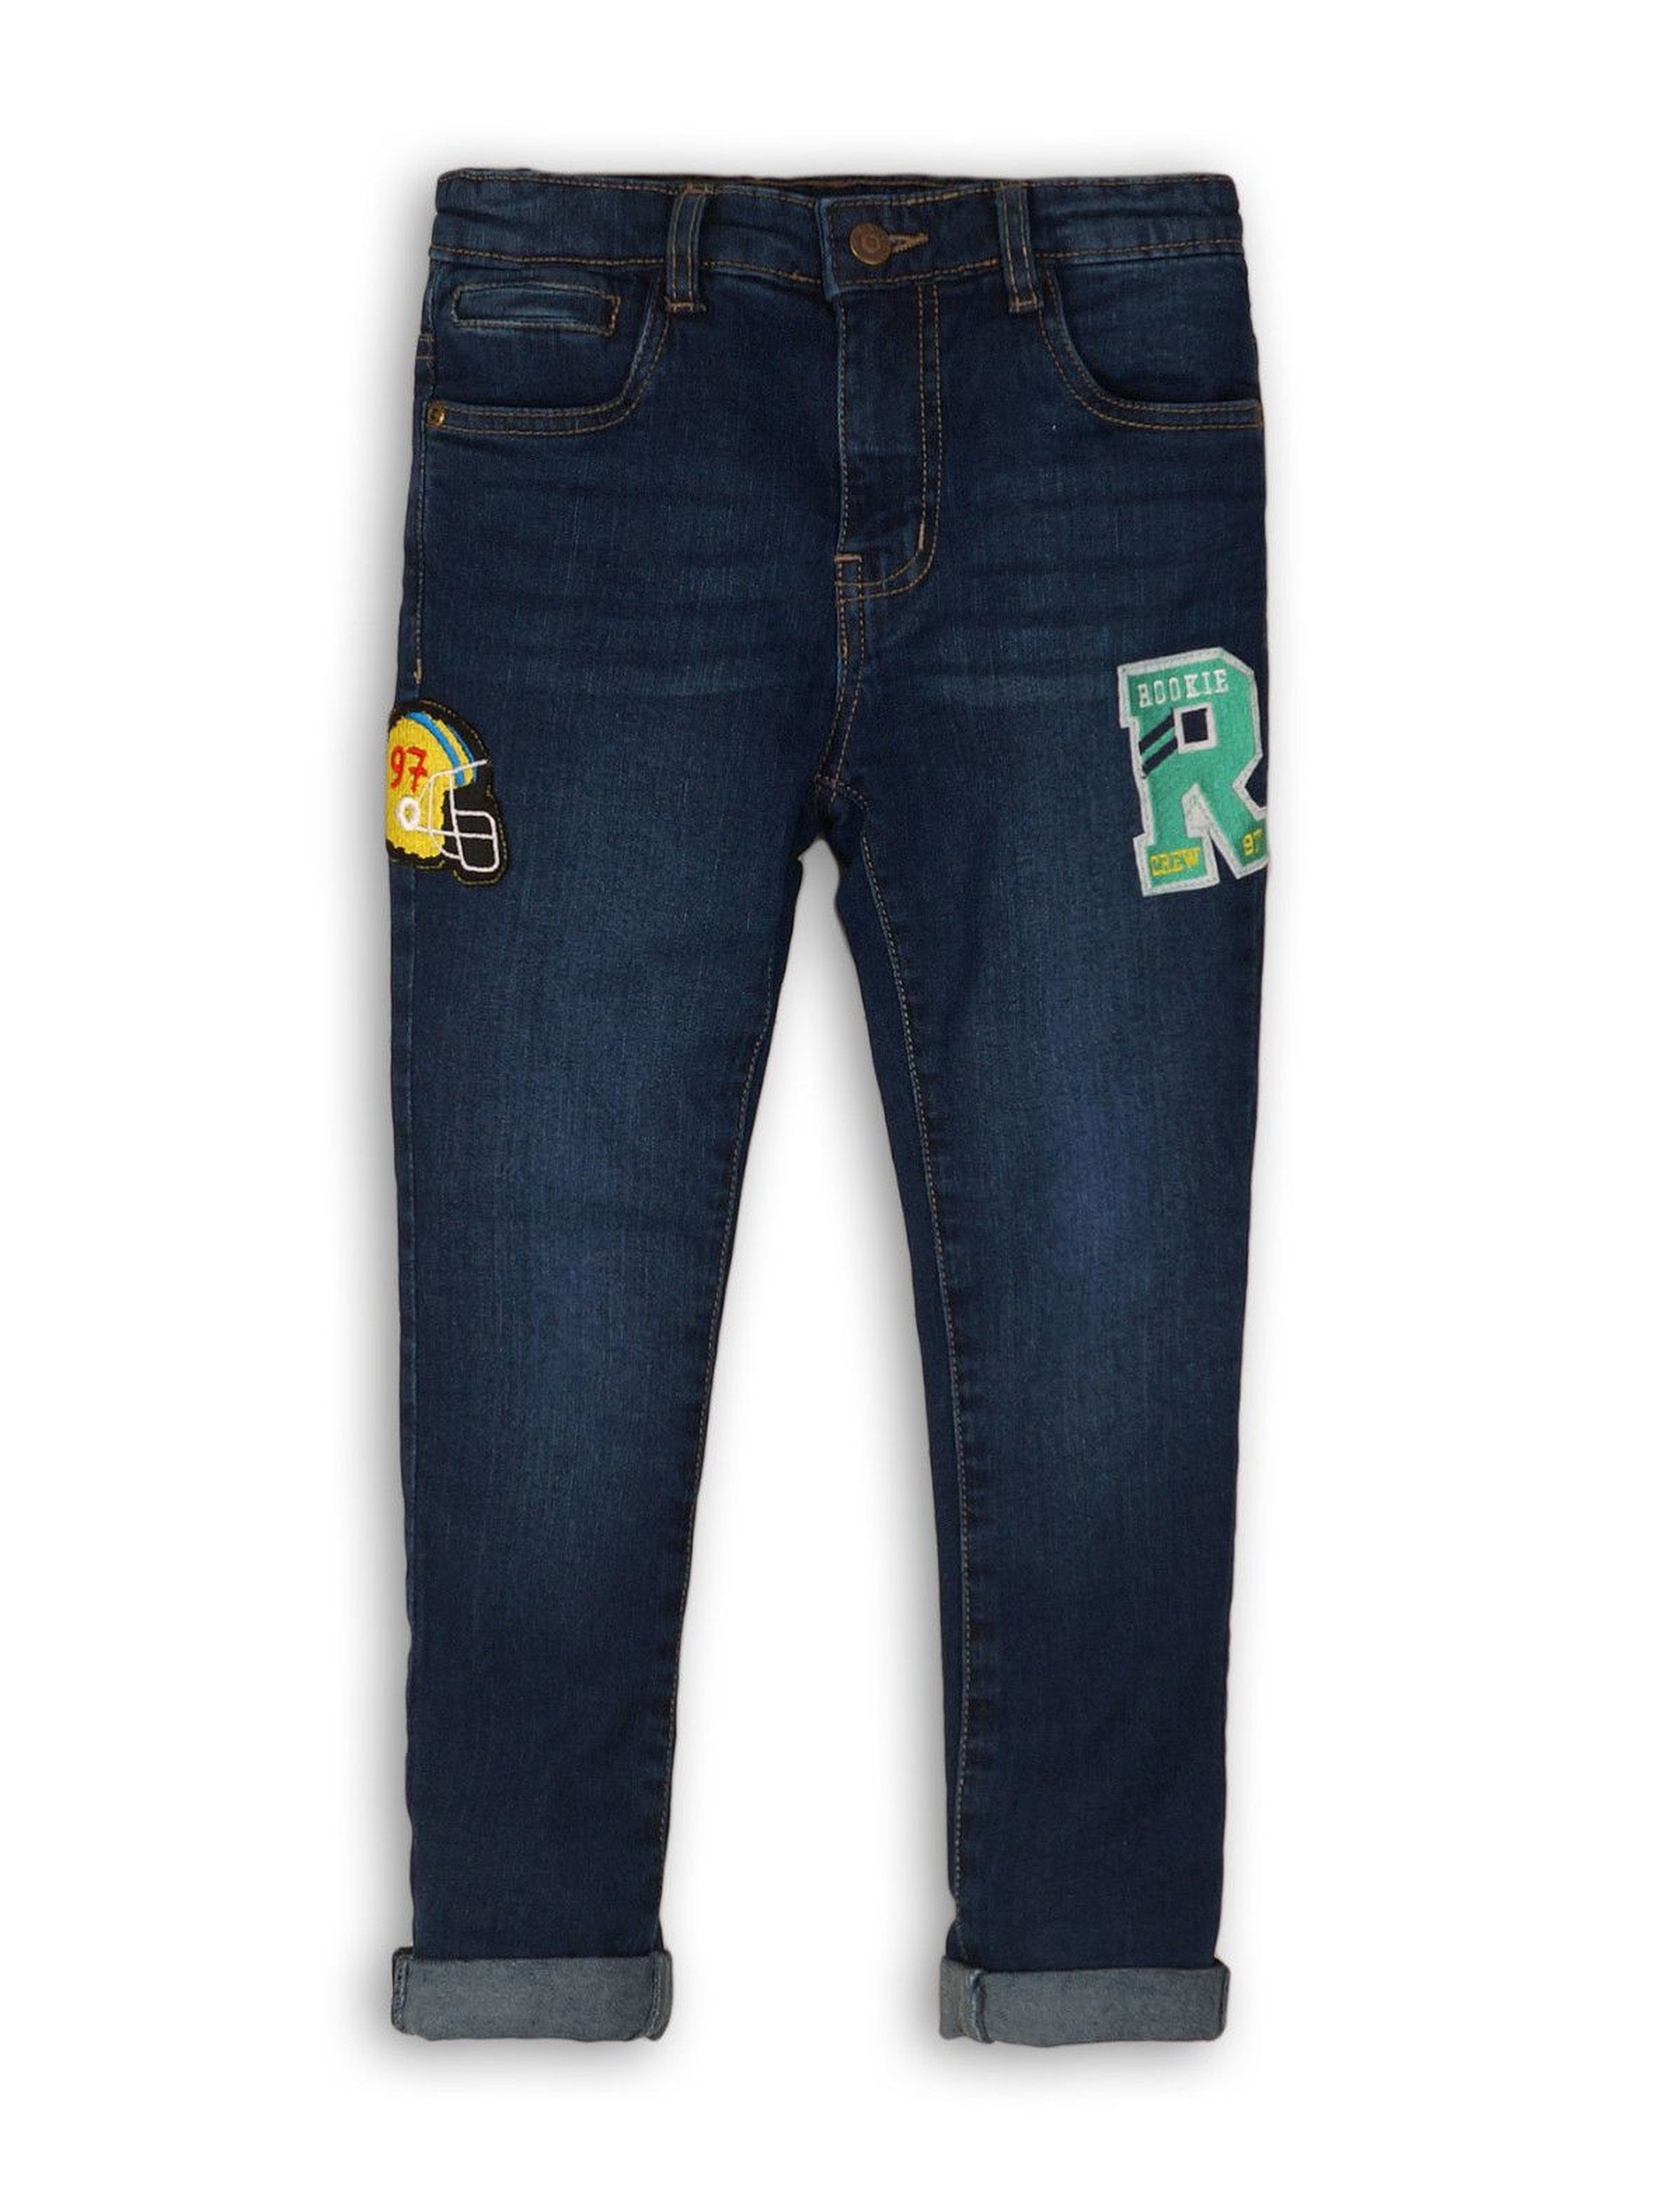 Spodnie chłopięce jeansowe z naszywkami